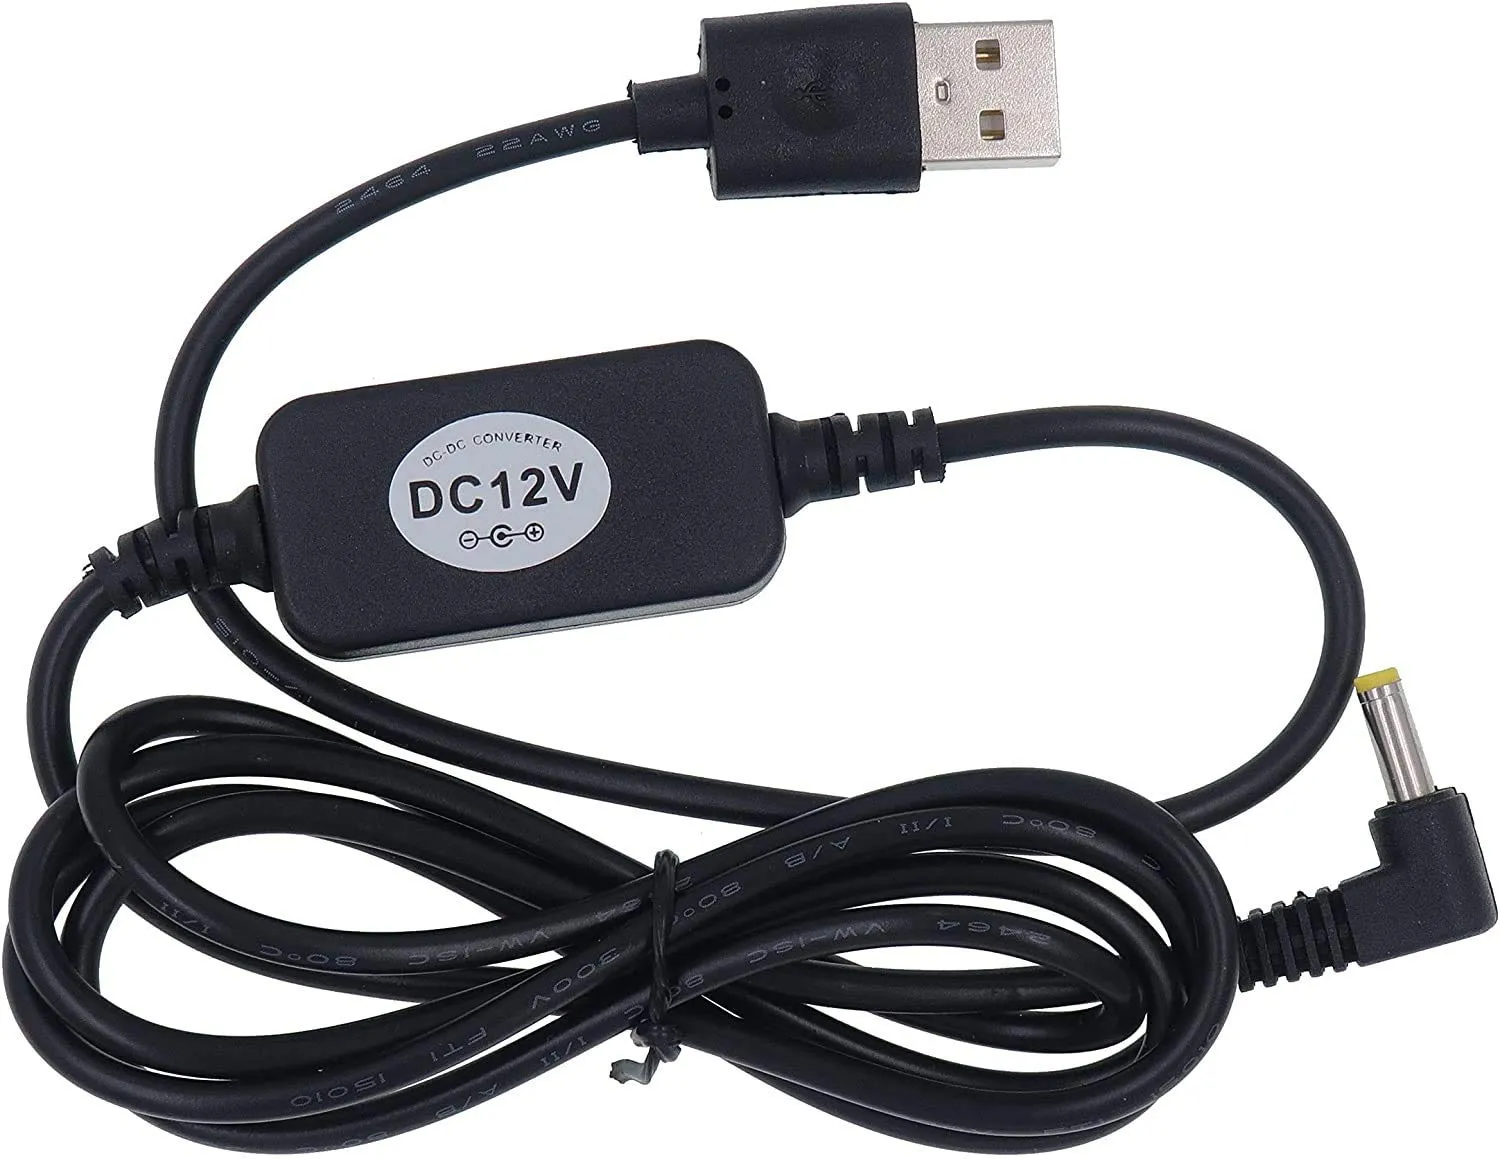 Cavo di alimentazione USB da 5 V a CC 12 V 4 mm x 1,7 mm compatibile con dispositivi DOT Adattatore di alimentazione del cavo convertitore step-up di tensione USB